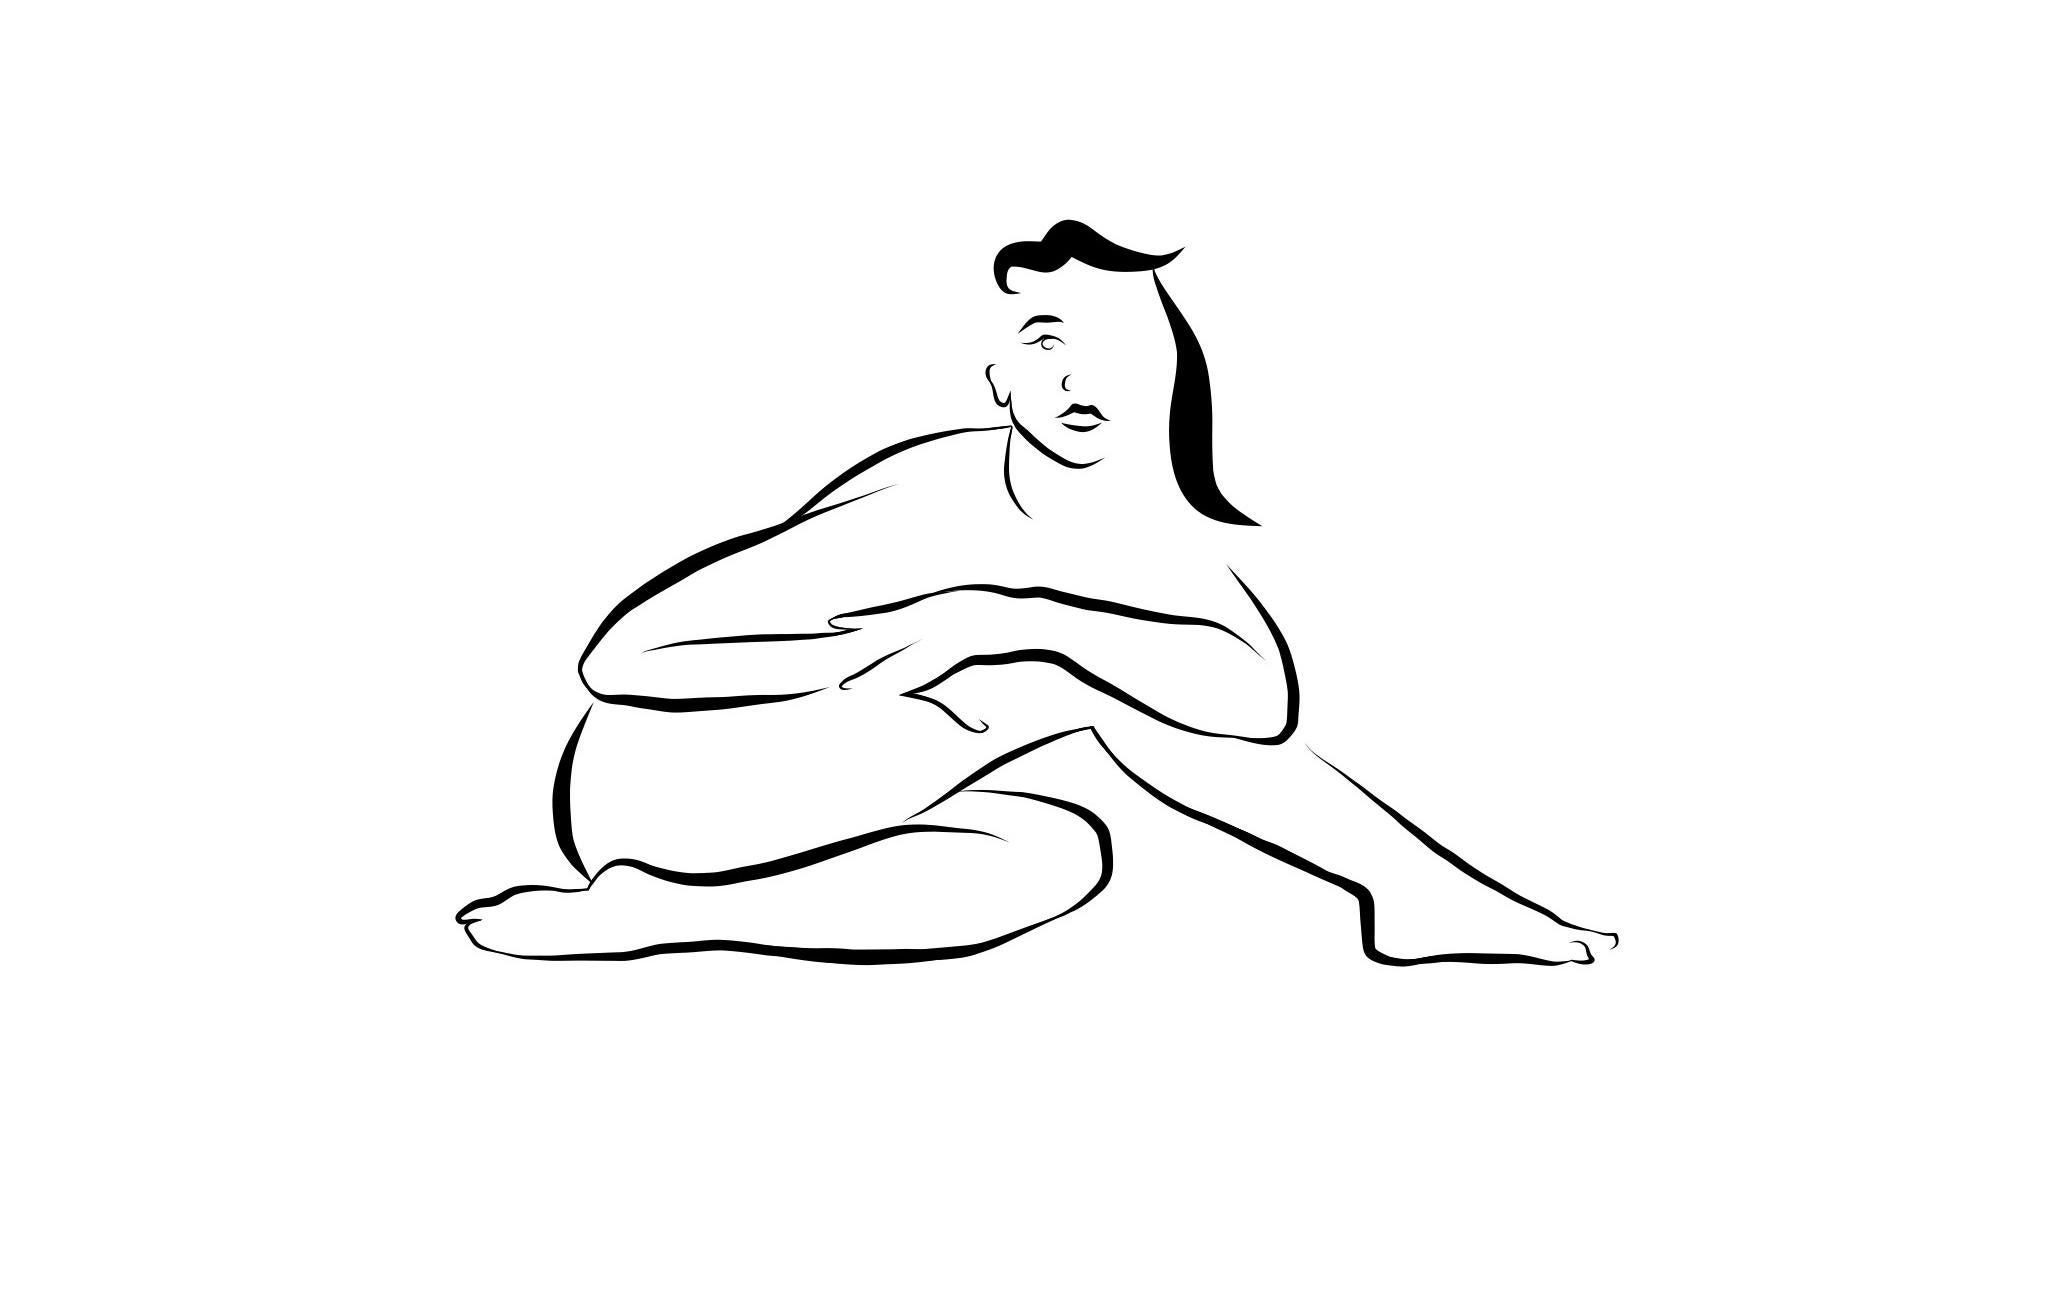 Michael Binkley Nude Print - Haiku #14, 1/50  - Digital Vector Drawing B&W Sitting Female Nude Woman Figure